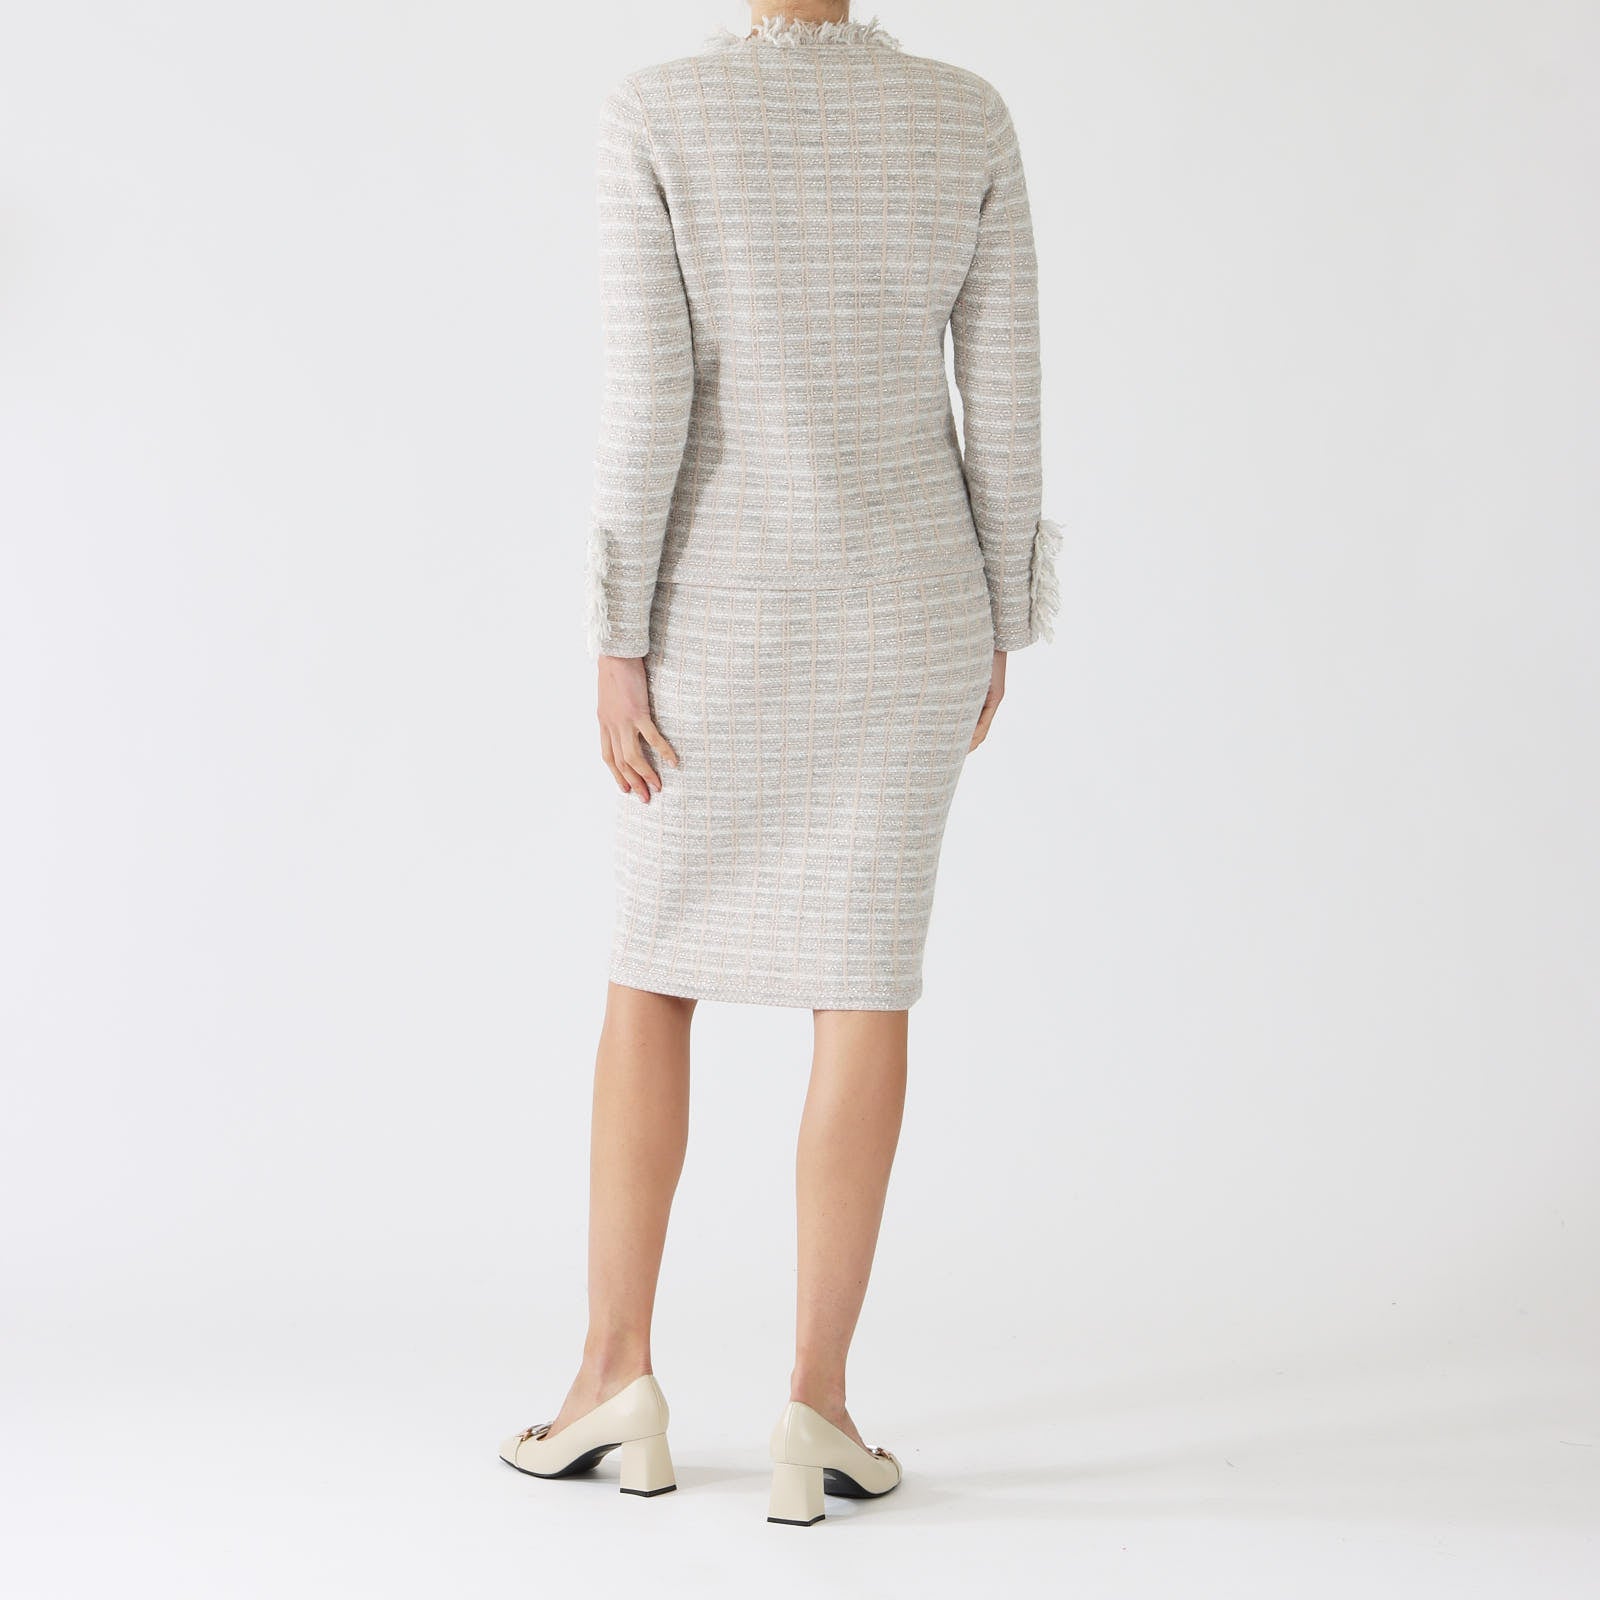 Phard Tweed Style Knit Jacket